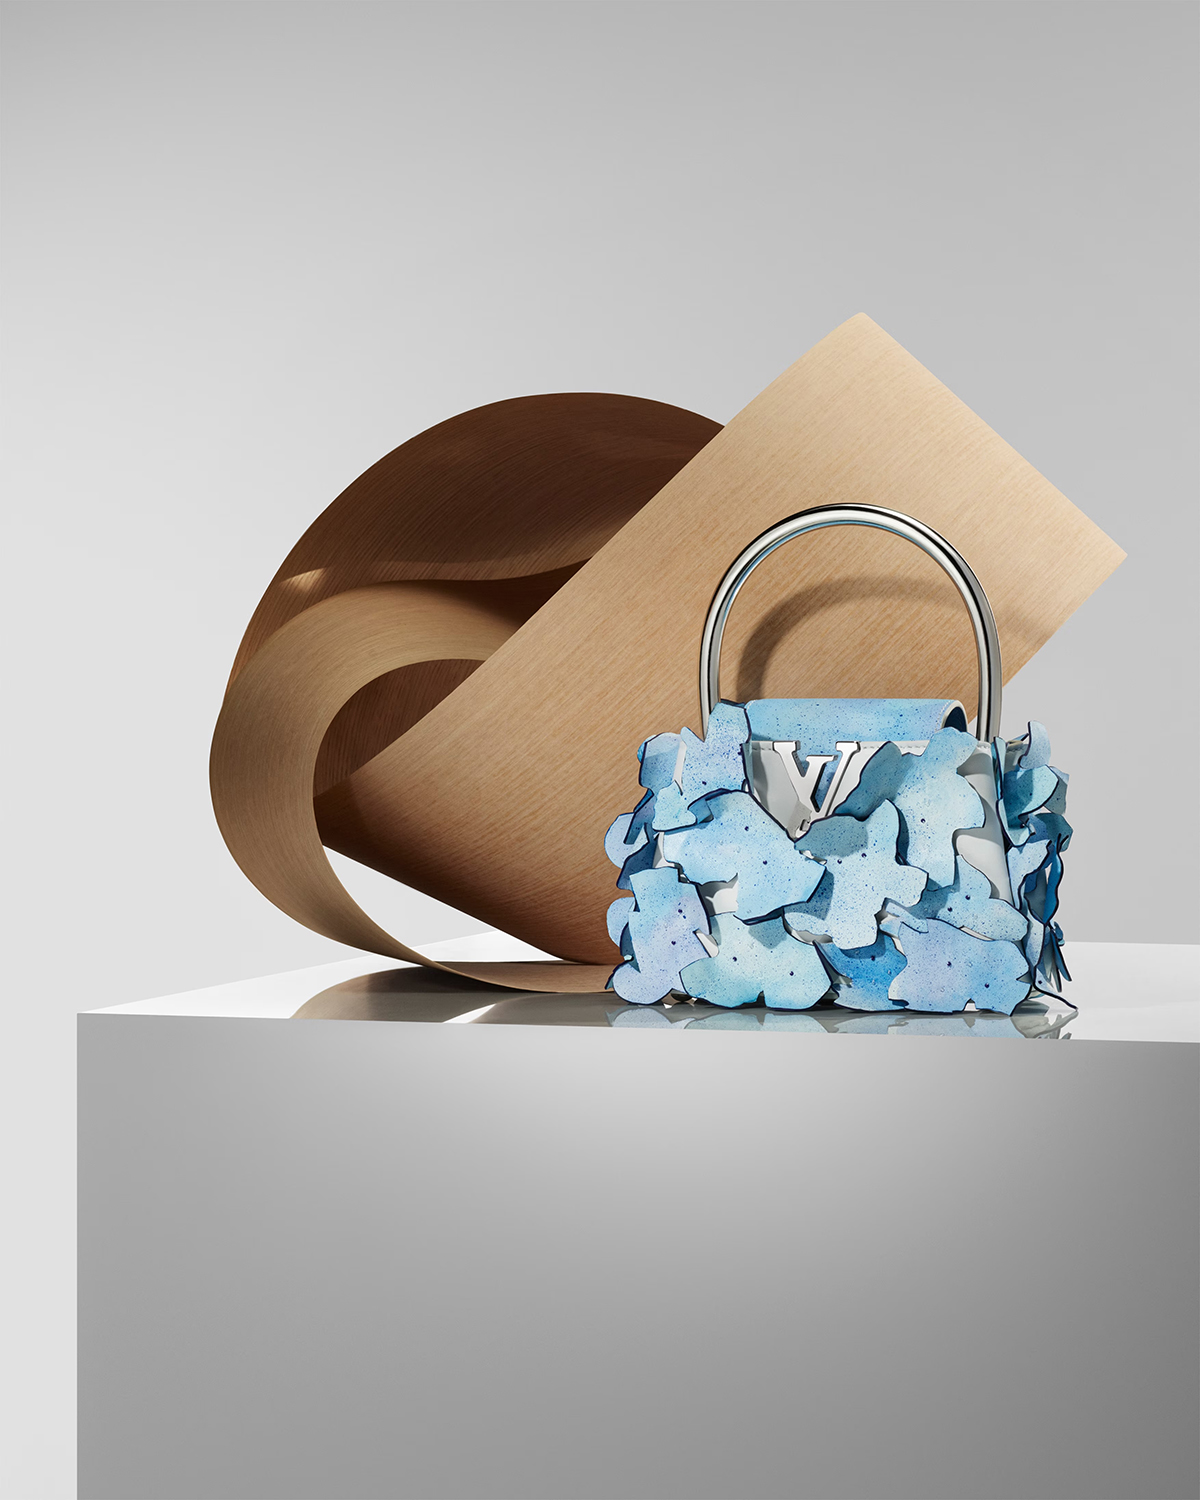 路易威登（Louis Vuitton）与著名建筑师法兰克·盖赫里（Frank Gehry）合作推出了一系列手袋